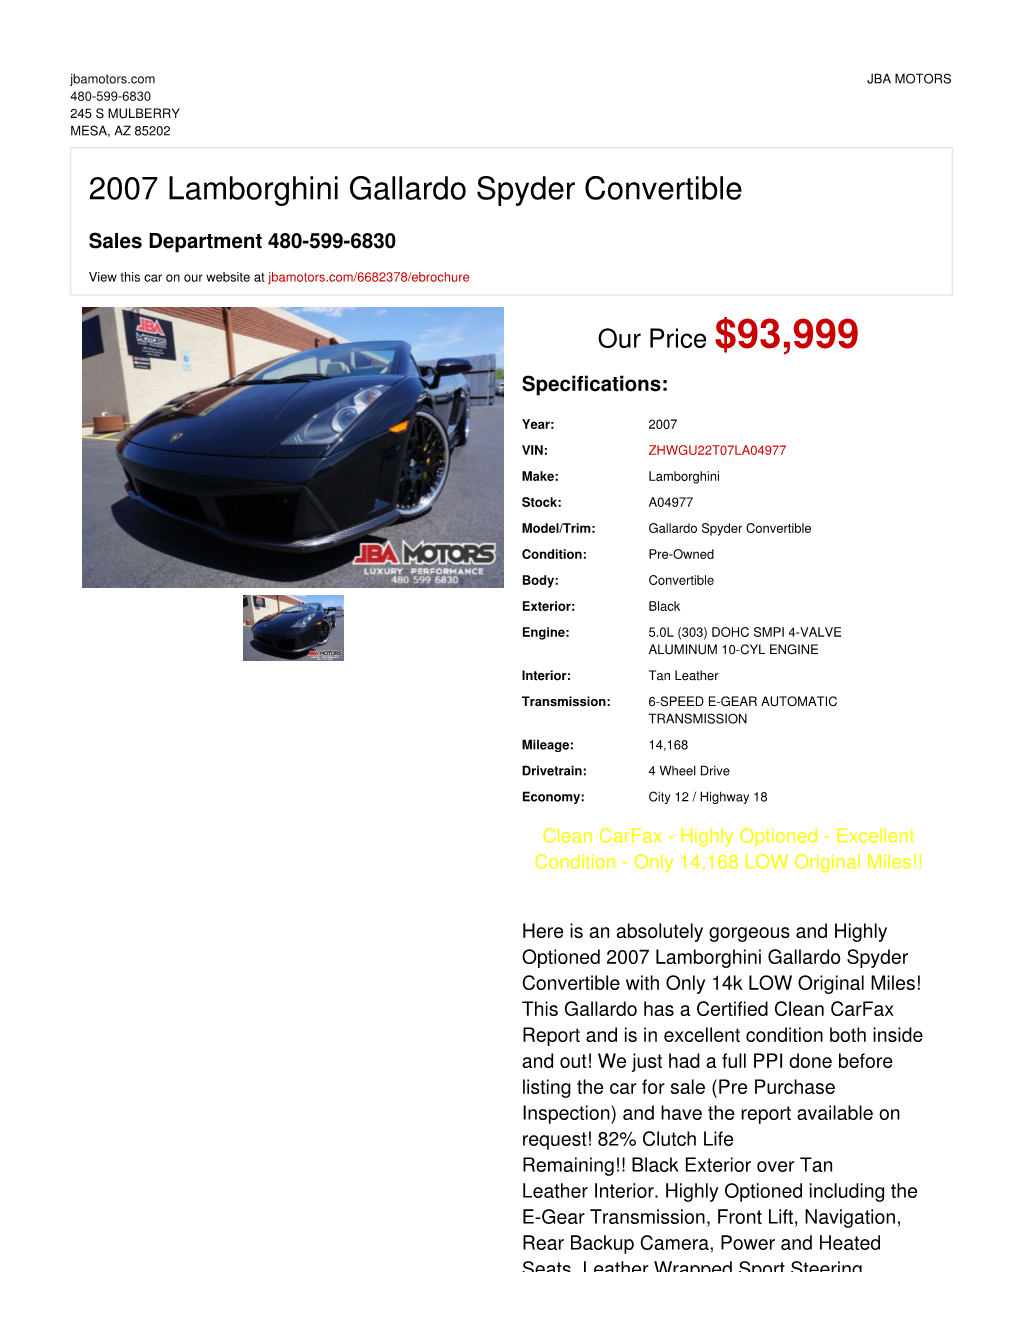 2007 Lamborghini Gallardo Spyder Convertible | MESA, AZ | JBA